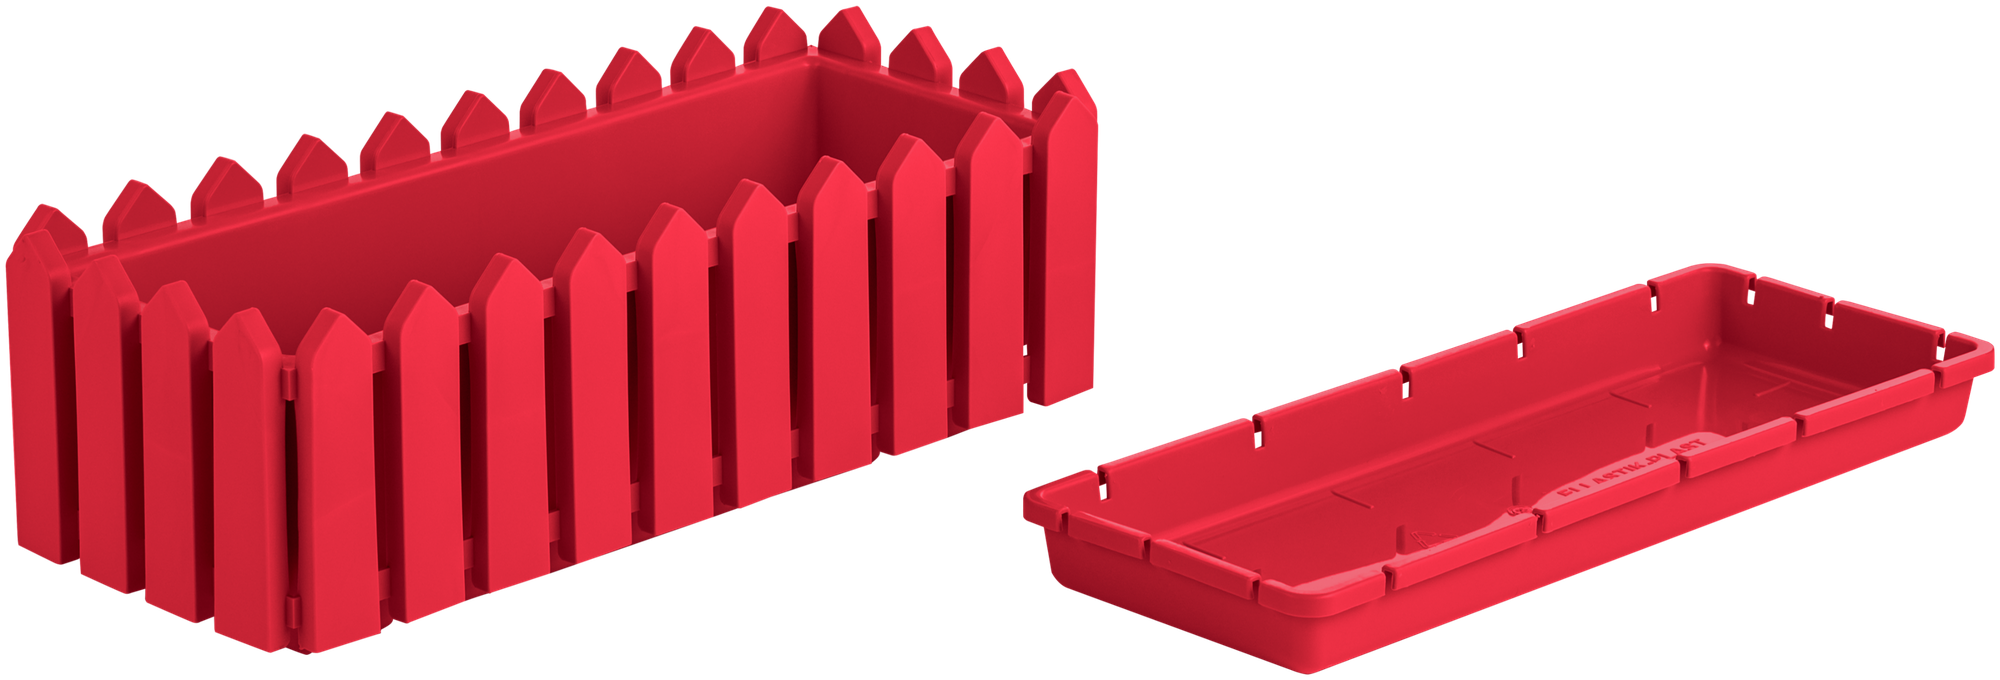 Кашпо с поддоном "Лардо" от "Элластик-Пласт" прямоугольное 46,8х18,8х16 см. Цвет: Красный.